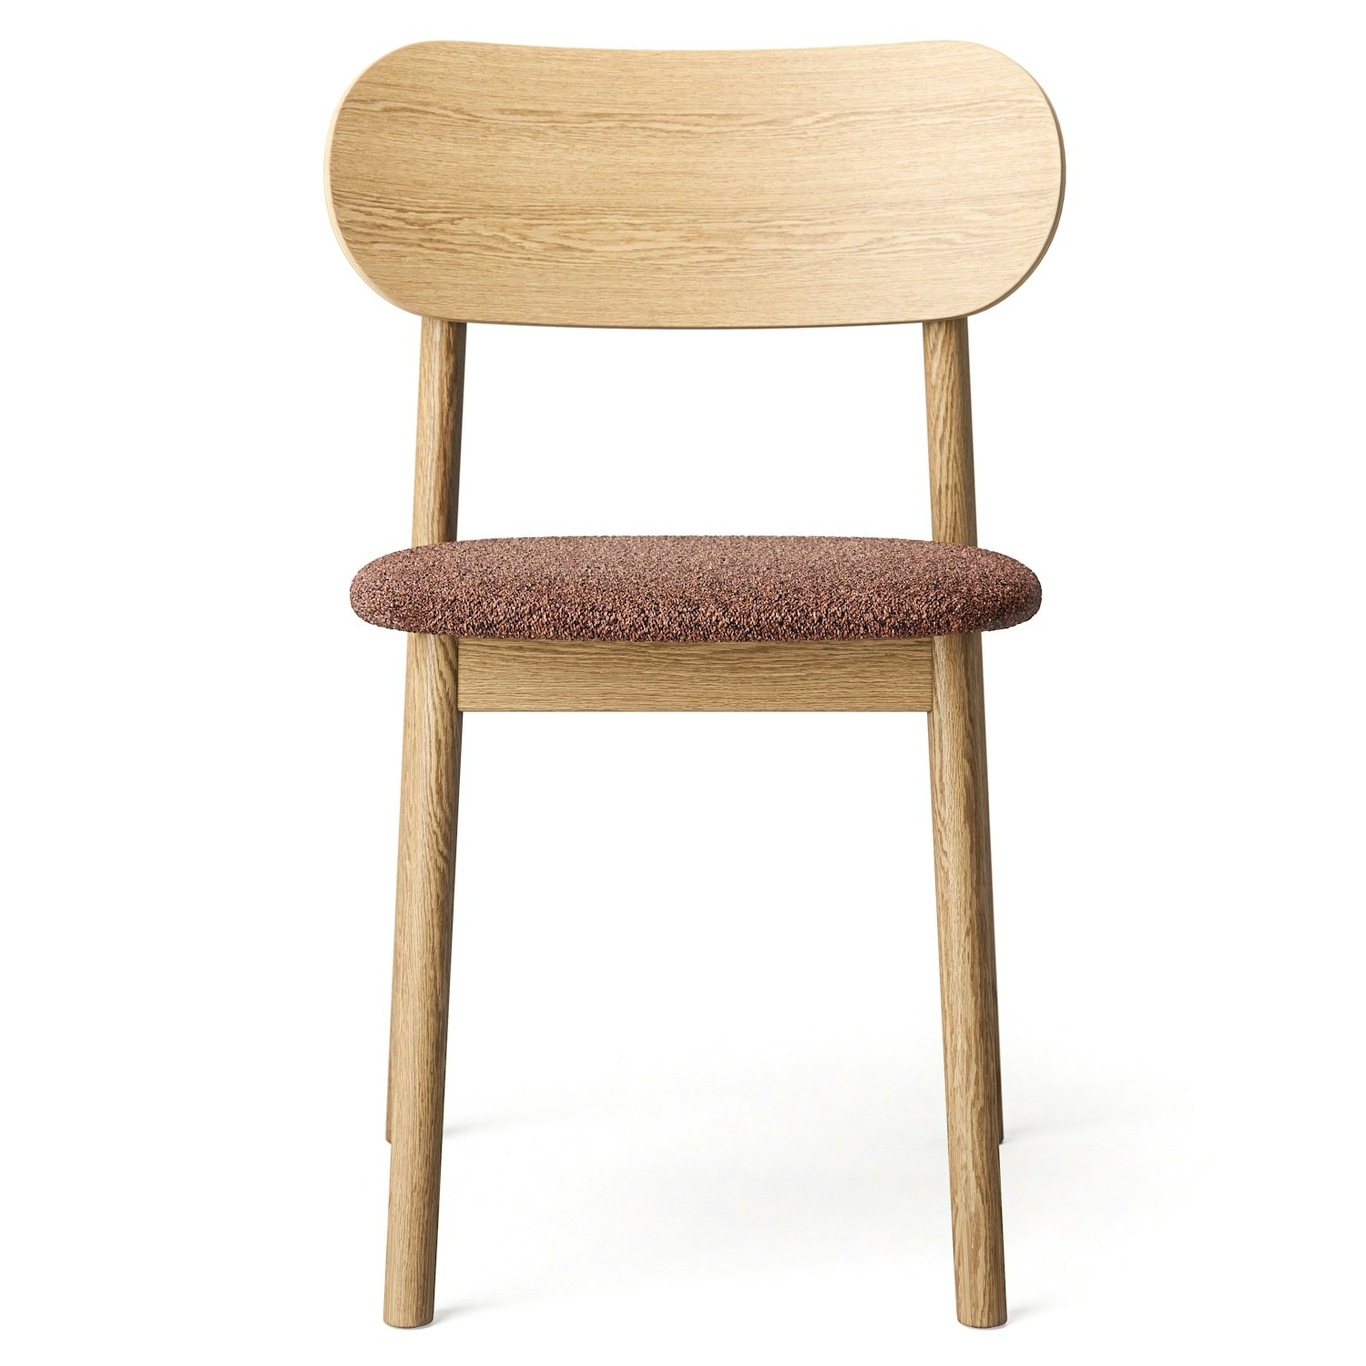 Elephant Chair, Natural Oak / Rust coloured Bouclé